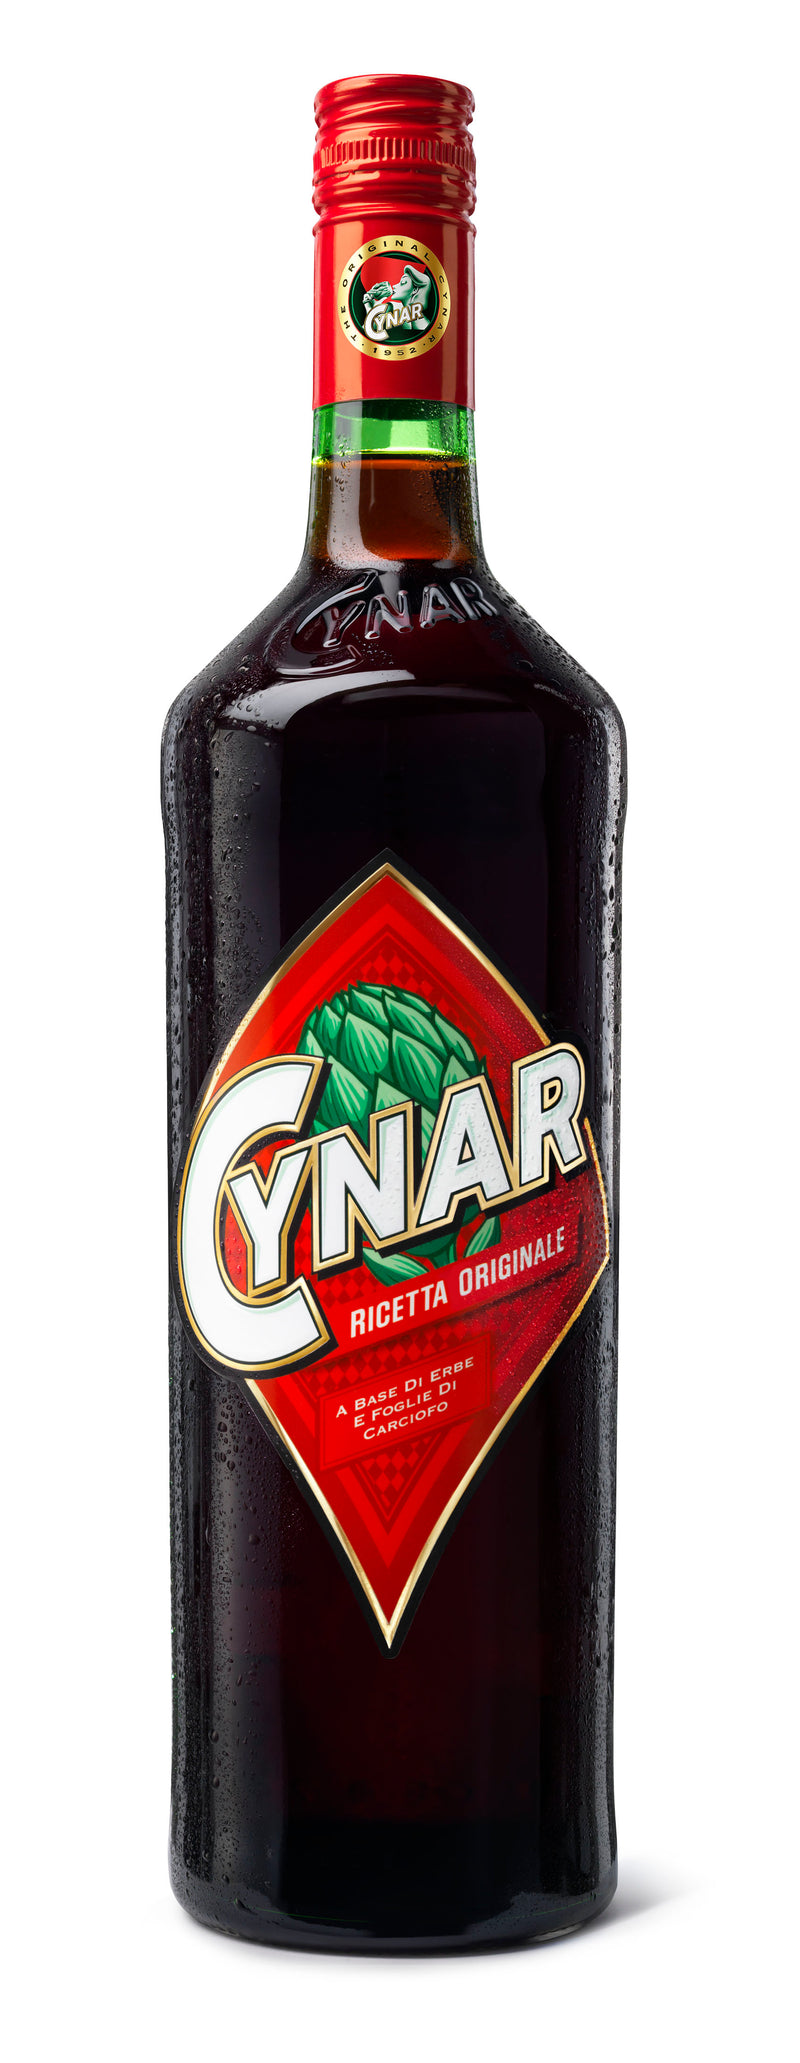 Cynar利口酒 - 700ml